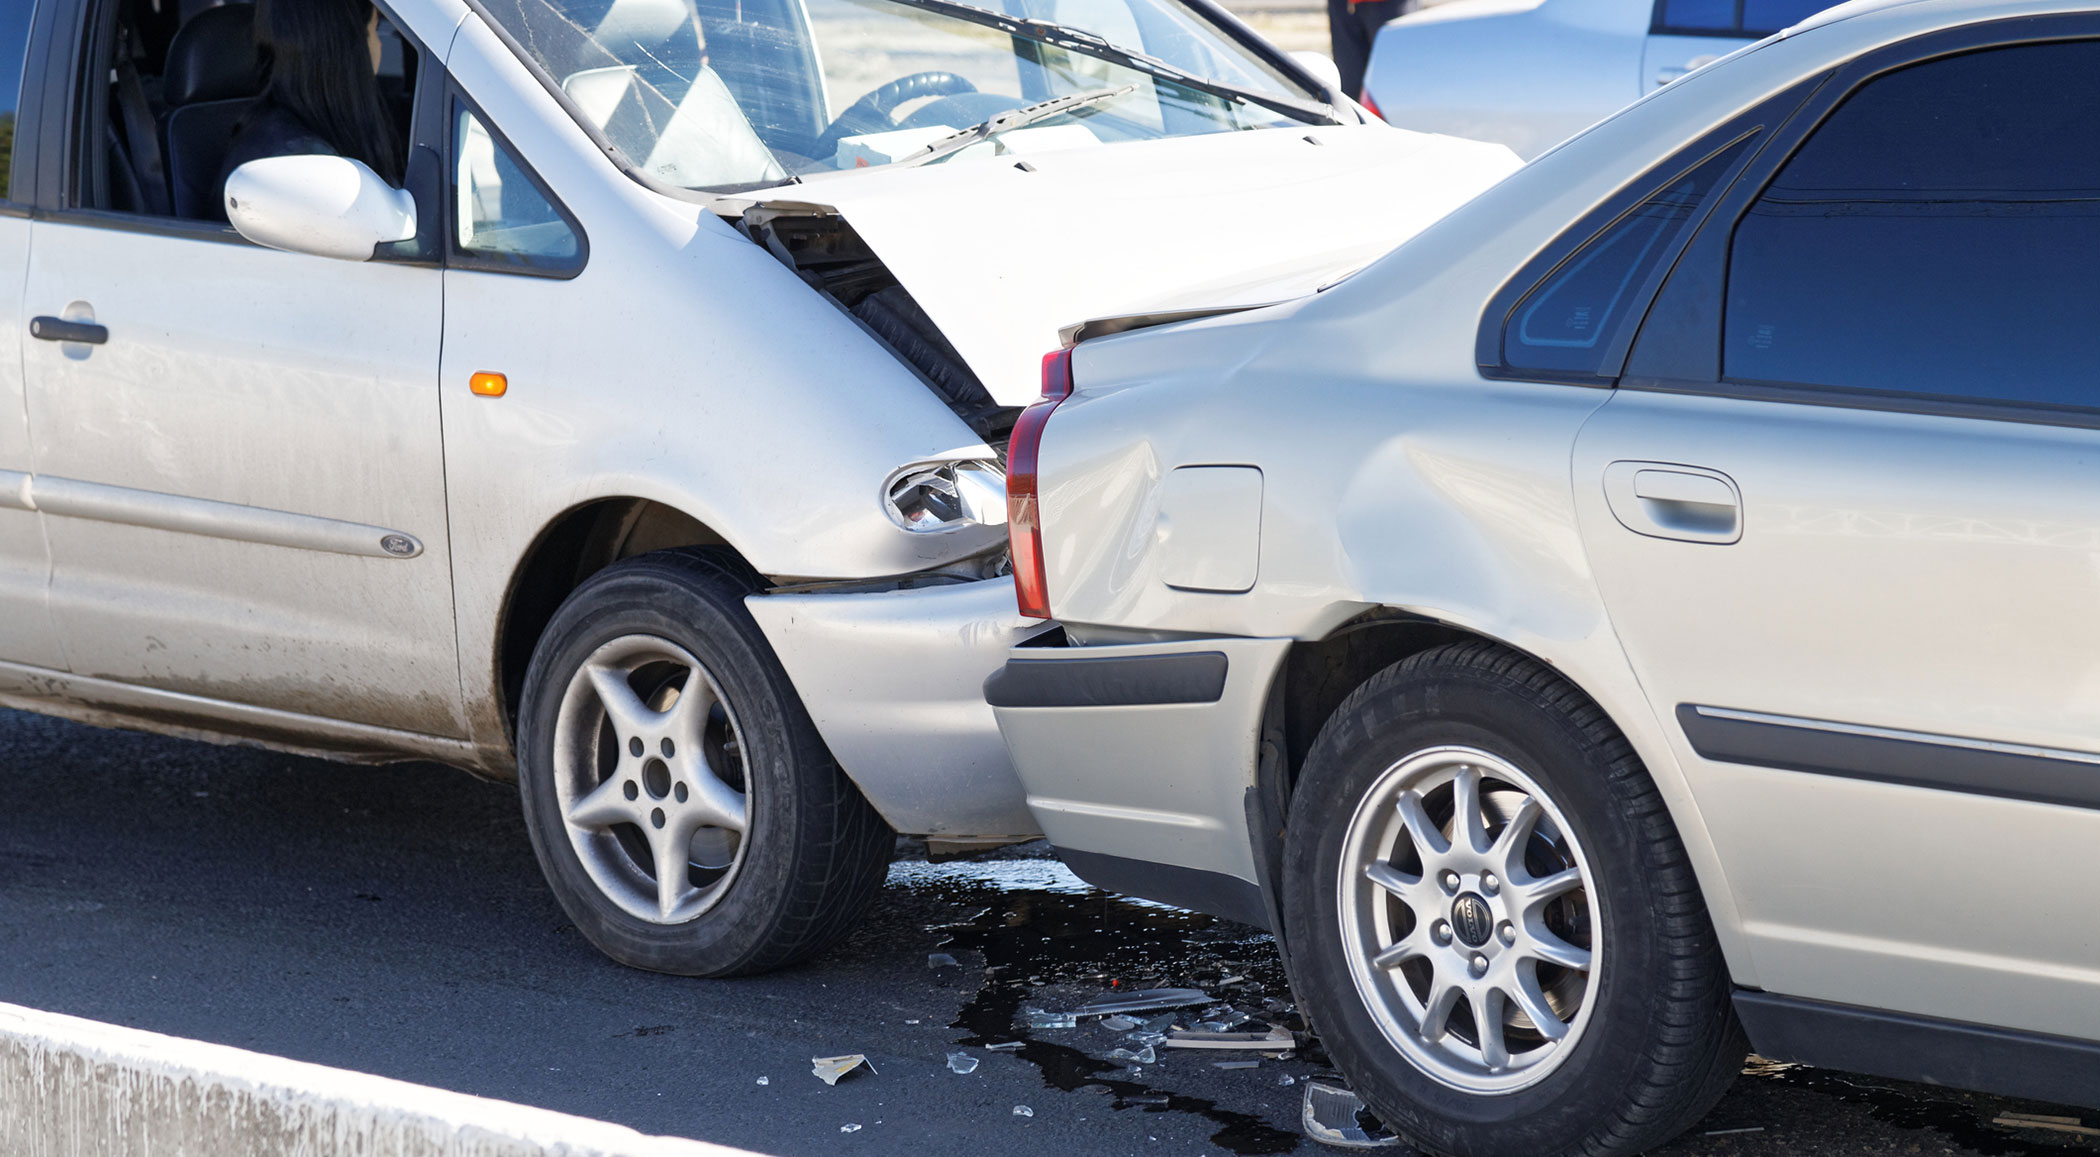 Los seguros desmienten el bulo: sí cubren los accidentes de coche